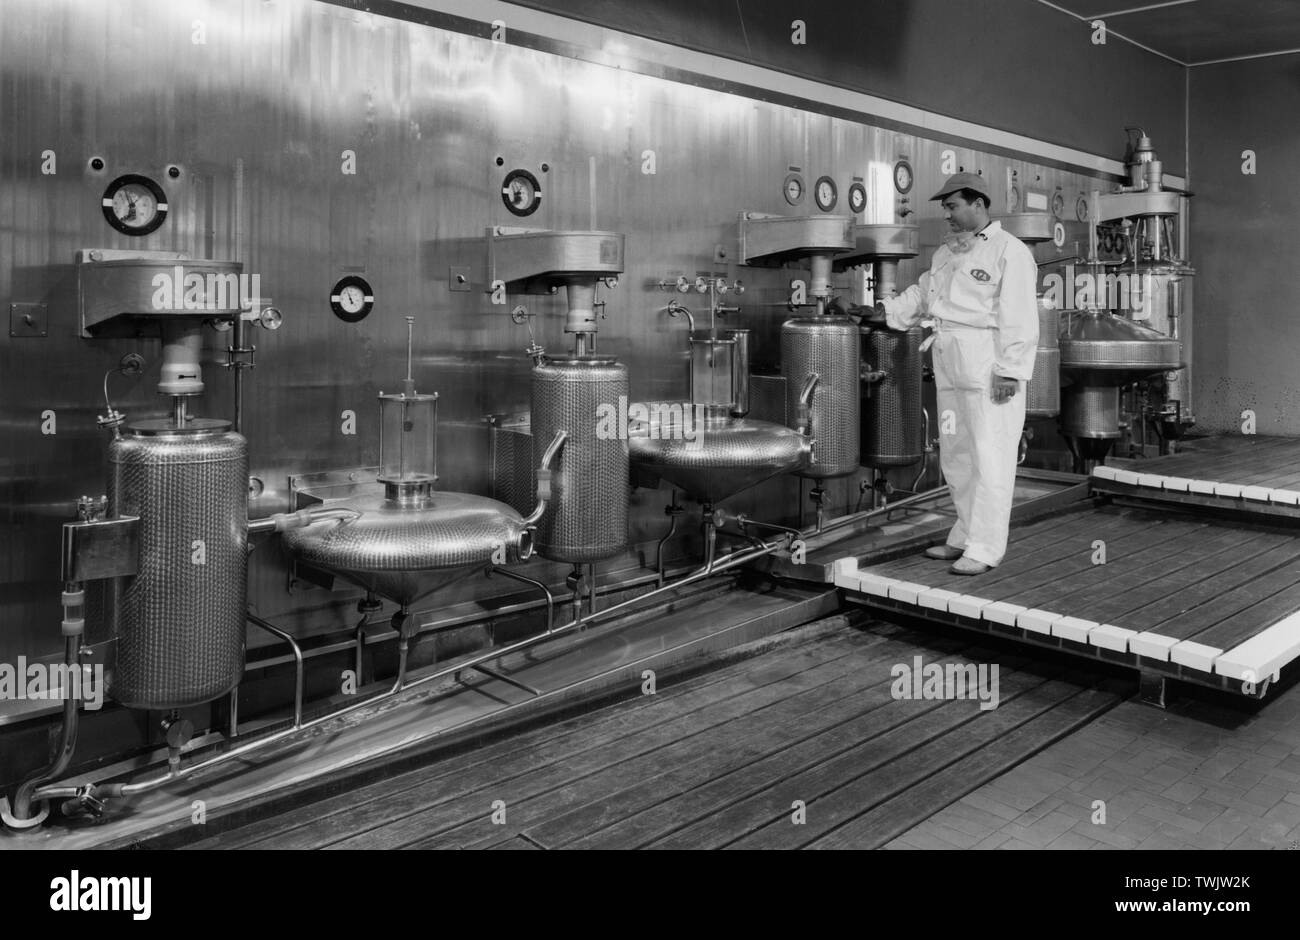 Italie, Latium, colleferro, bombrini parodi delfino continue de l'usine la nitration de glycérine, 1960 Banque D'Images